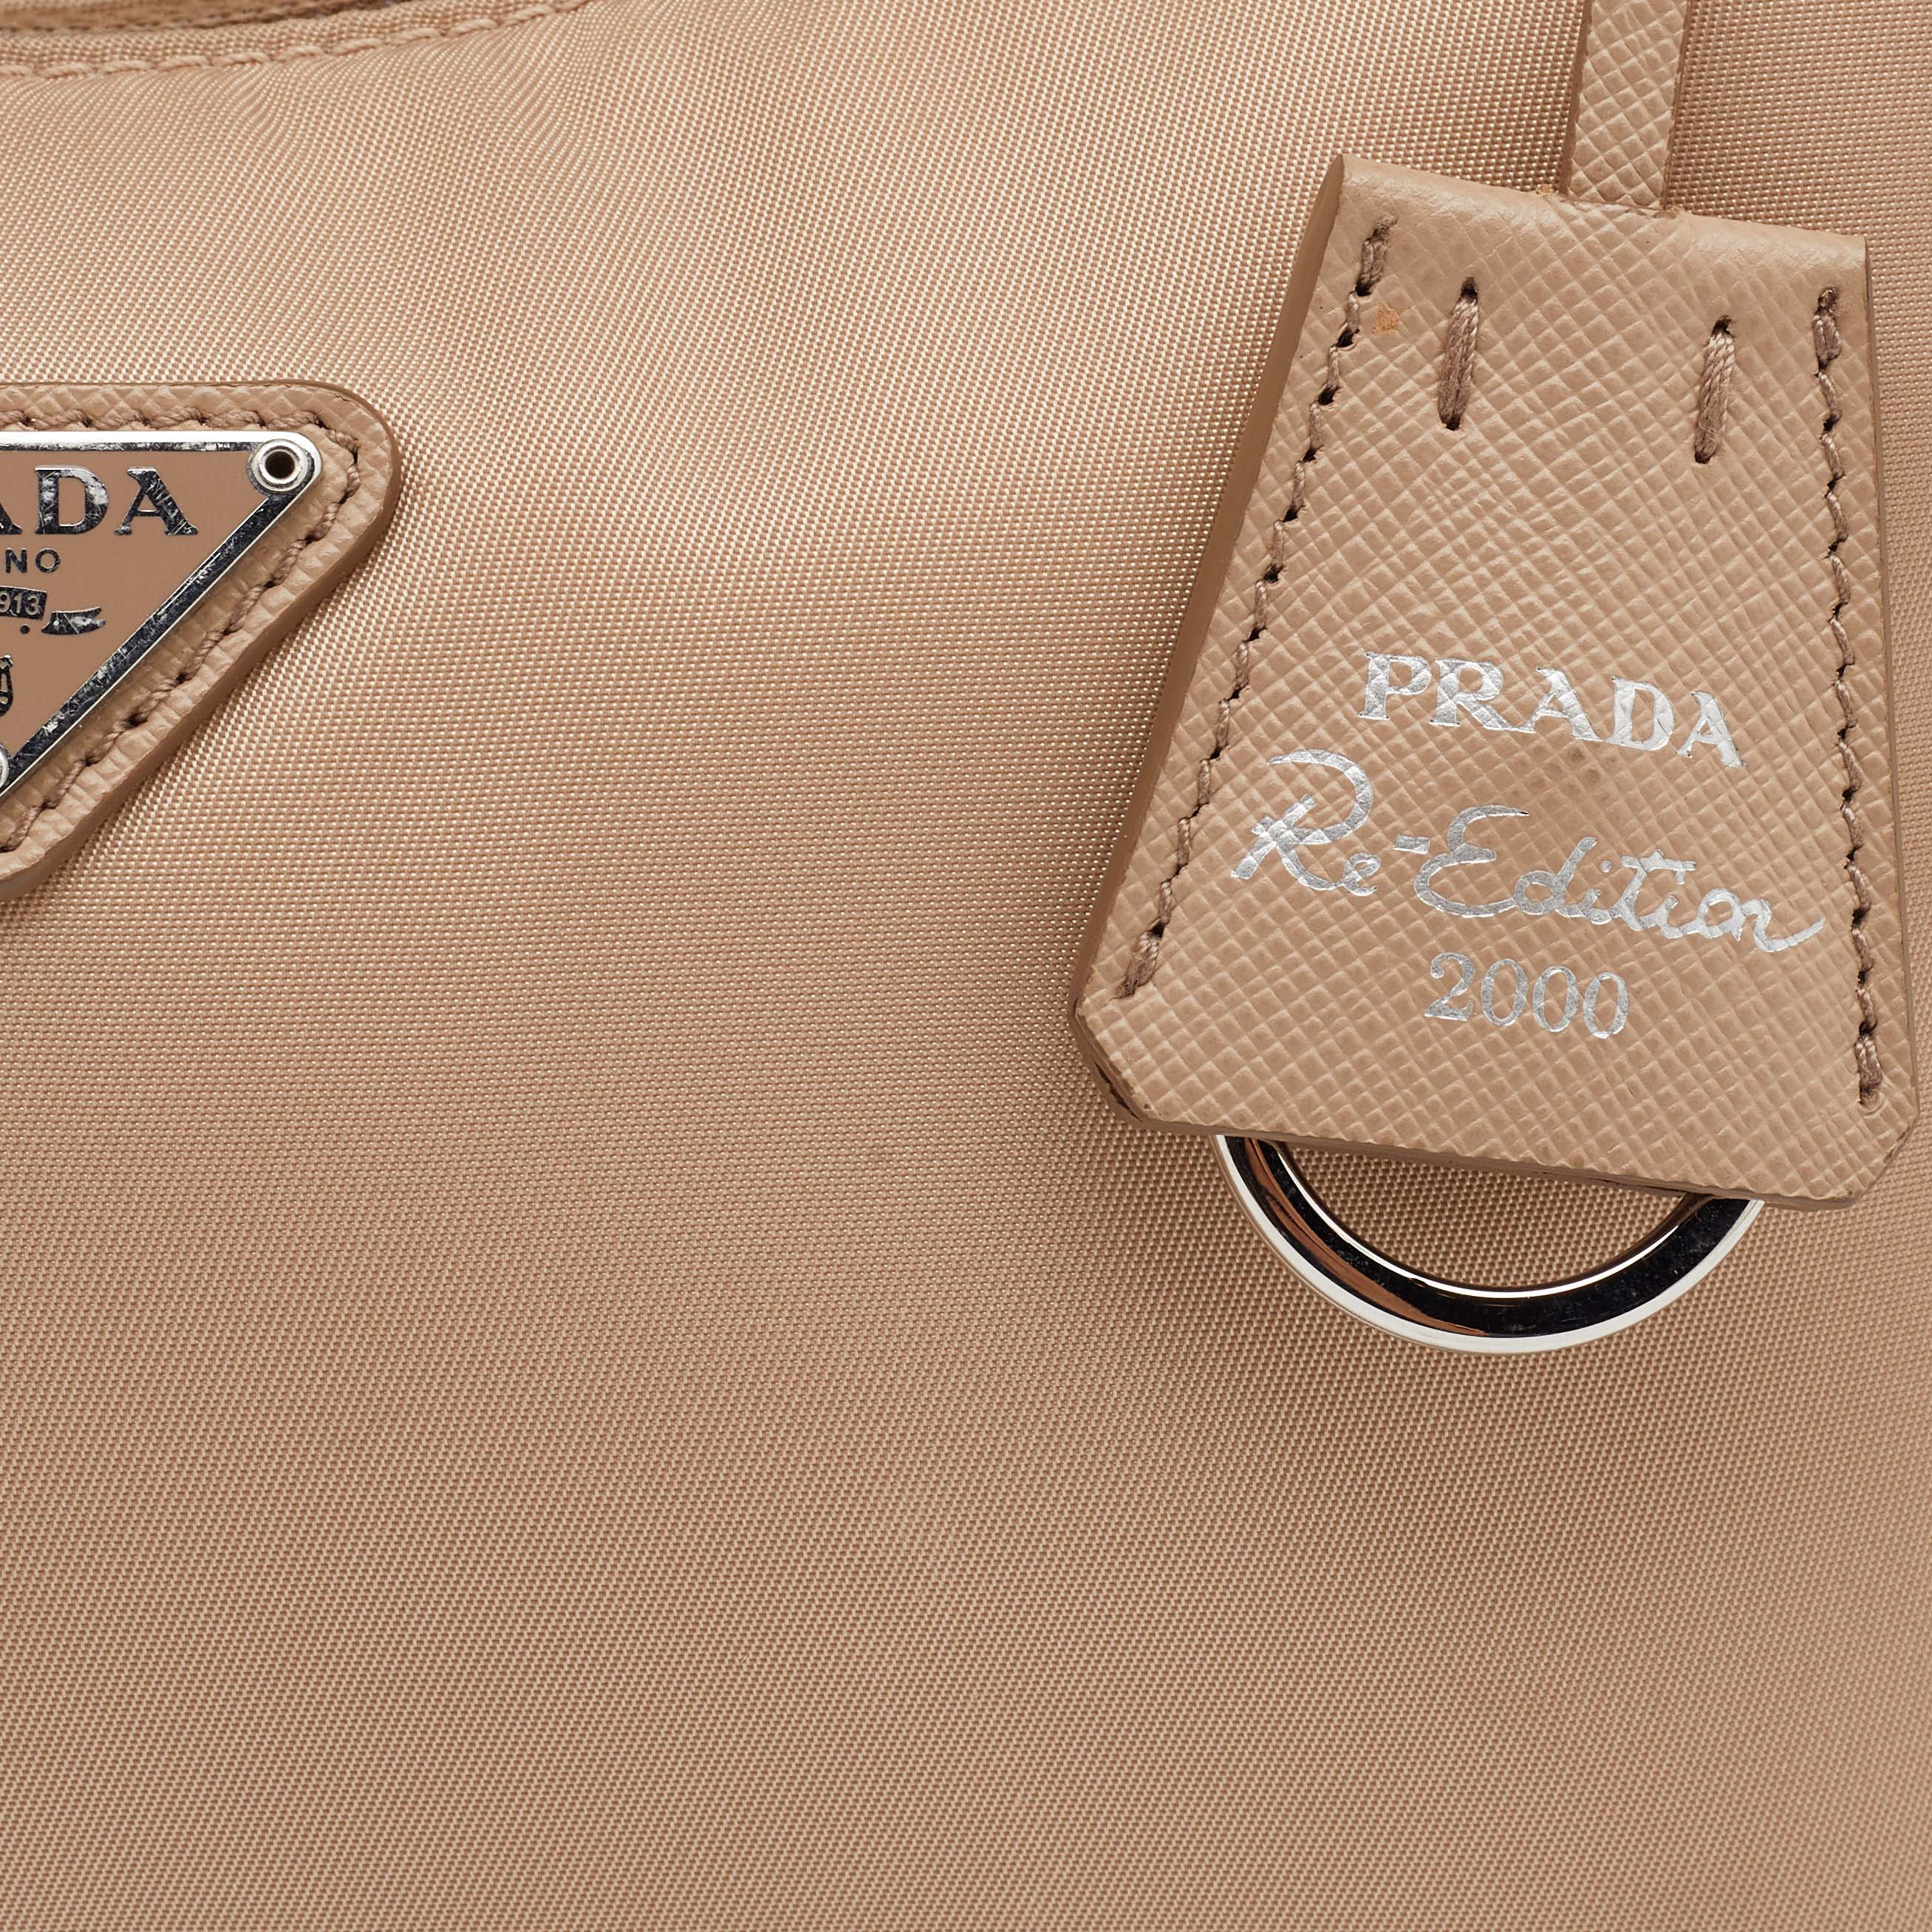 Prada Re-Edition 2000 Mini Bag Nylon Cameo Beige in Nylon/Saffiano Leather  with Silver-tone - US